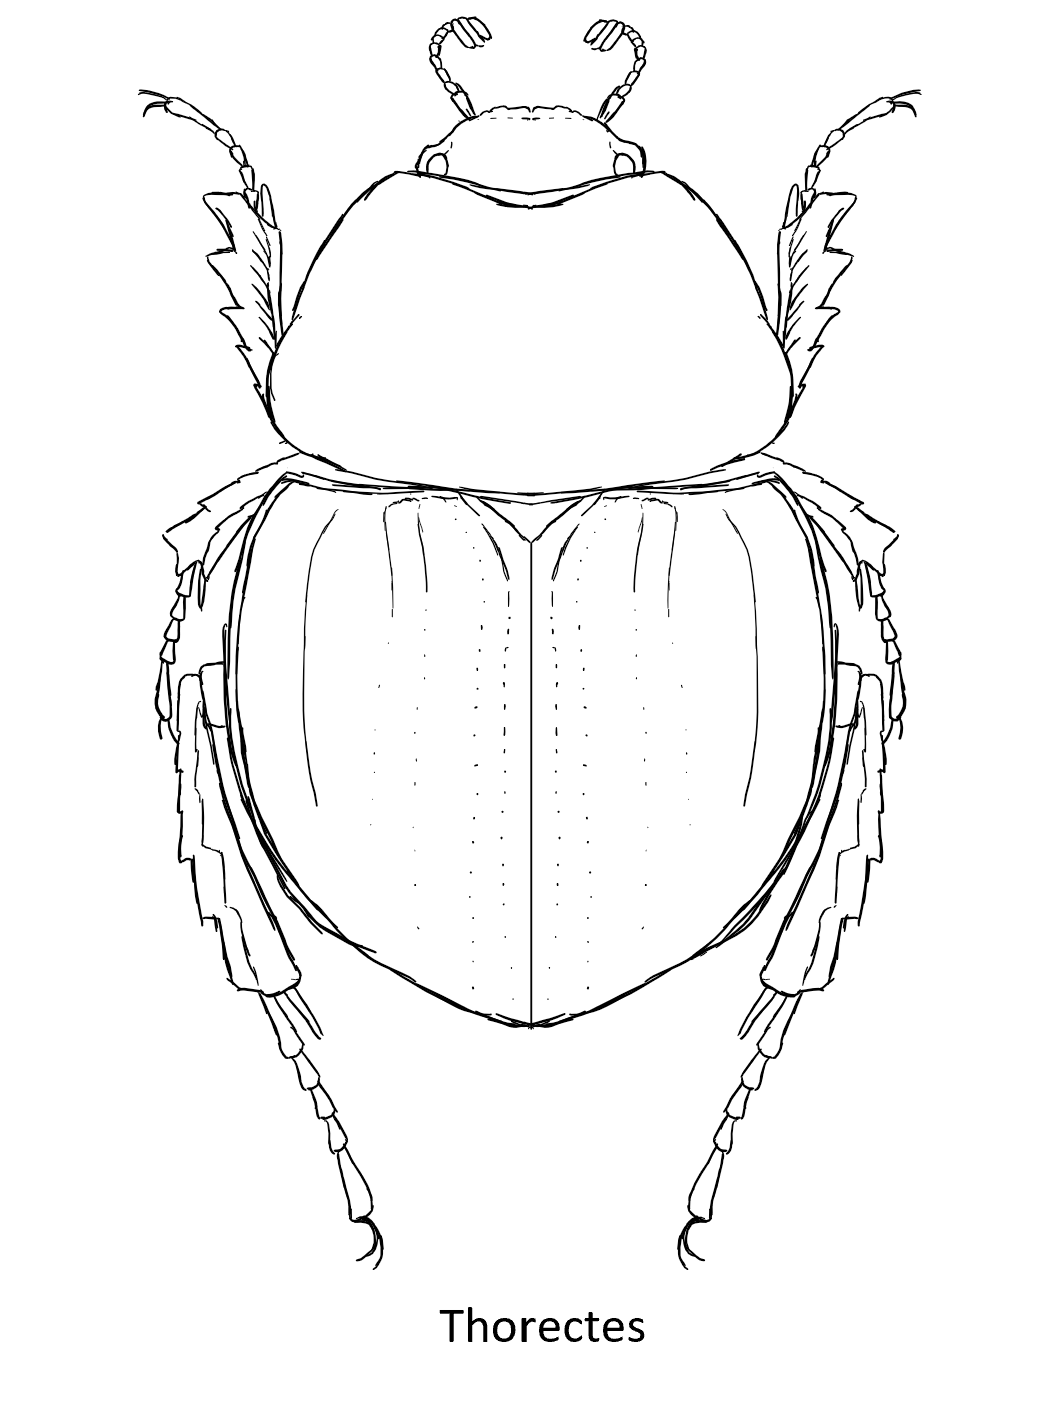 盔球角粪金龟的简笔画图片